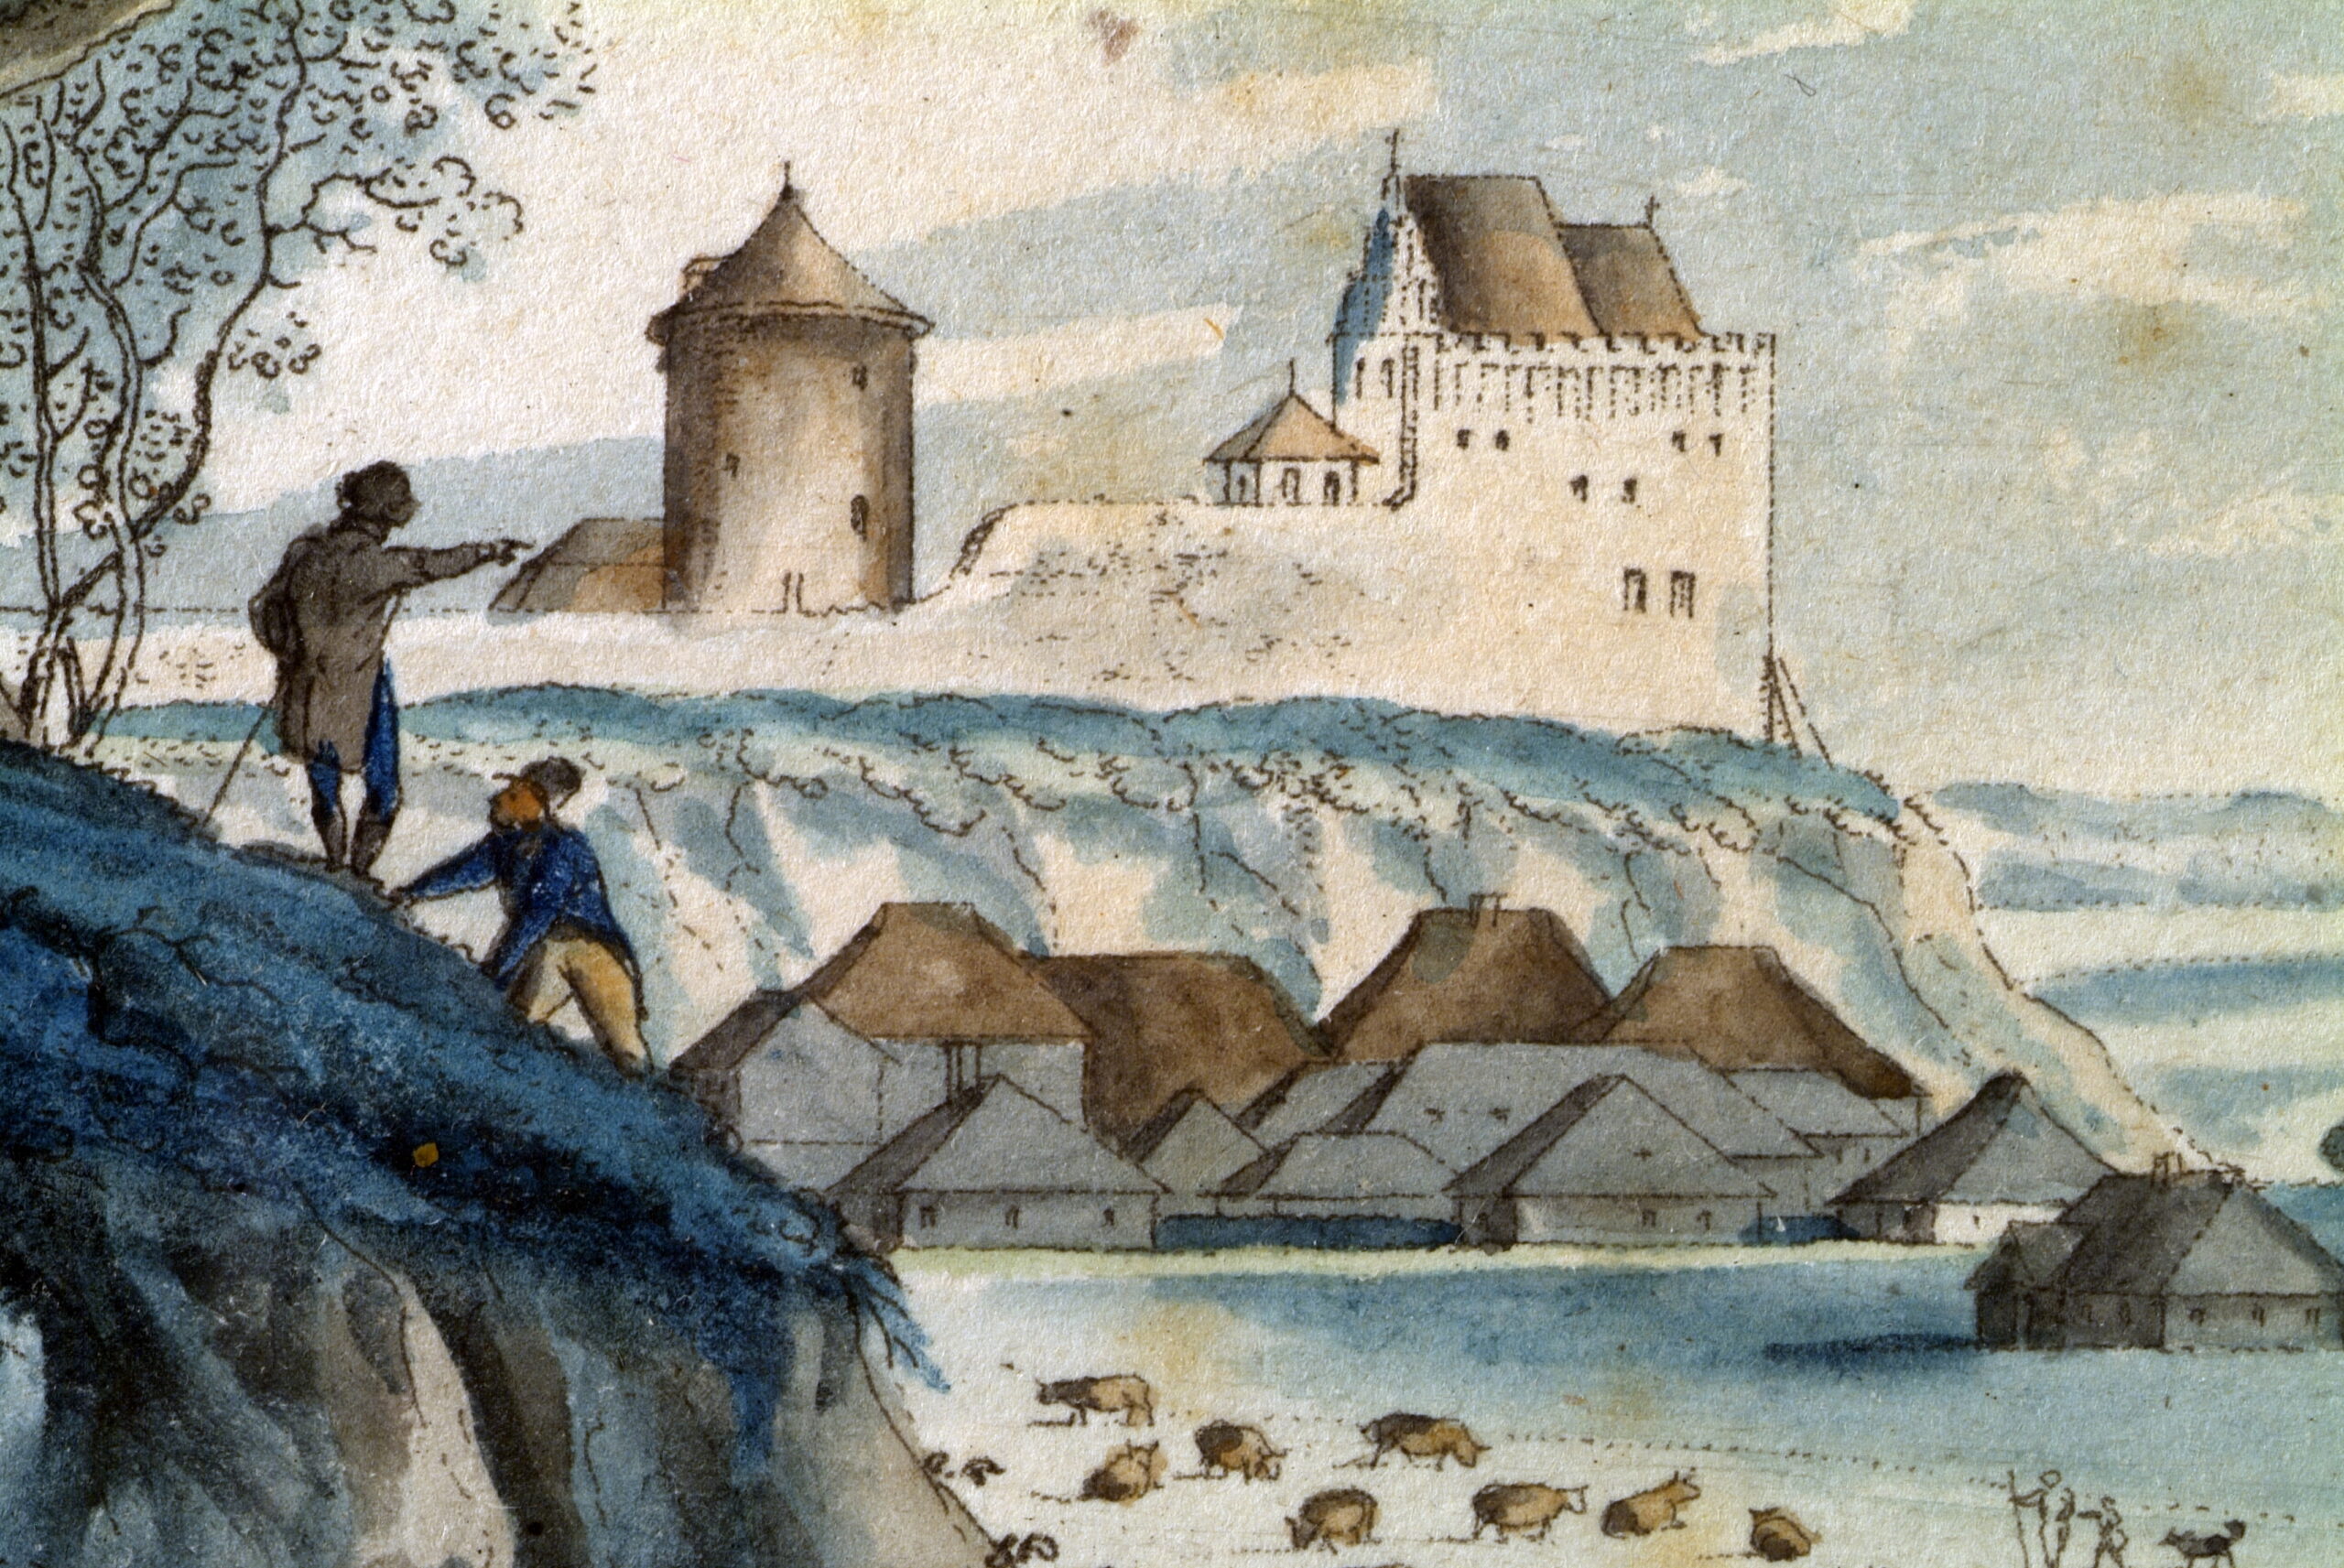 Obraz przedstawiający pozostałości zamku lubelskiego na wzgórzu - kaplicę z fragmentem murów obronnych i wieżę. U podnóża widoczne domy oraz pasące się bydło na łąkach.